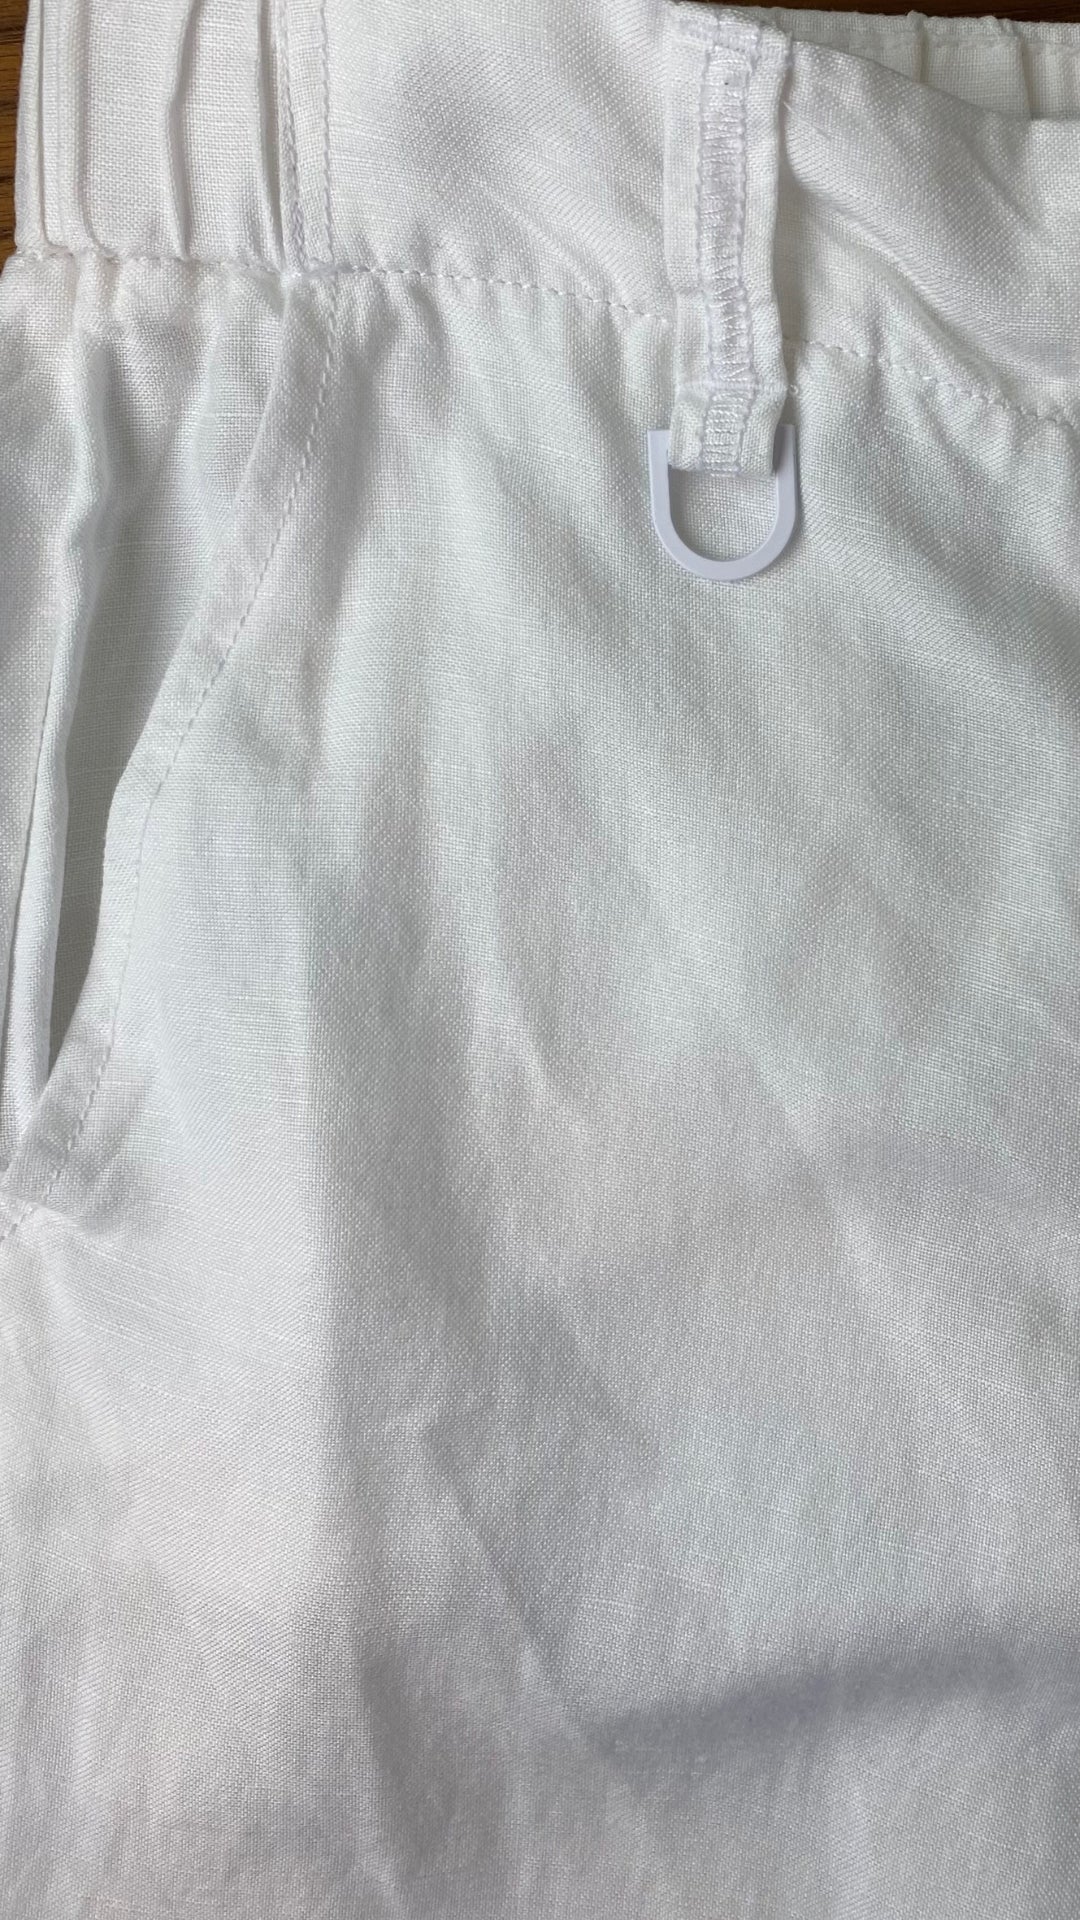 Pantalon blanc longueur 3/4 en mélange de lin Melanie Lyne, taille 4. Vue de la poche.